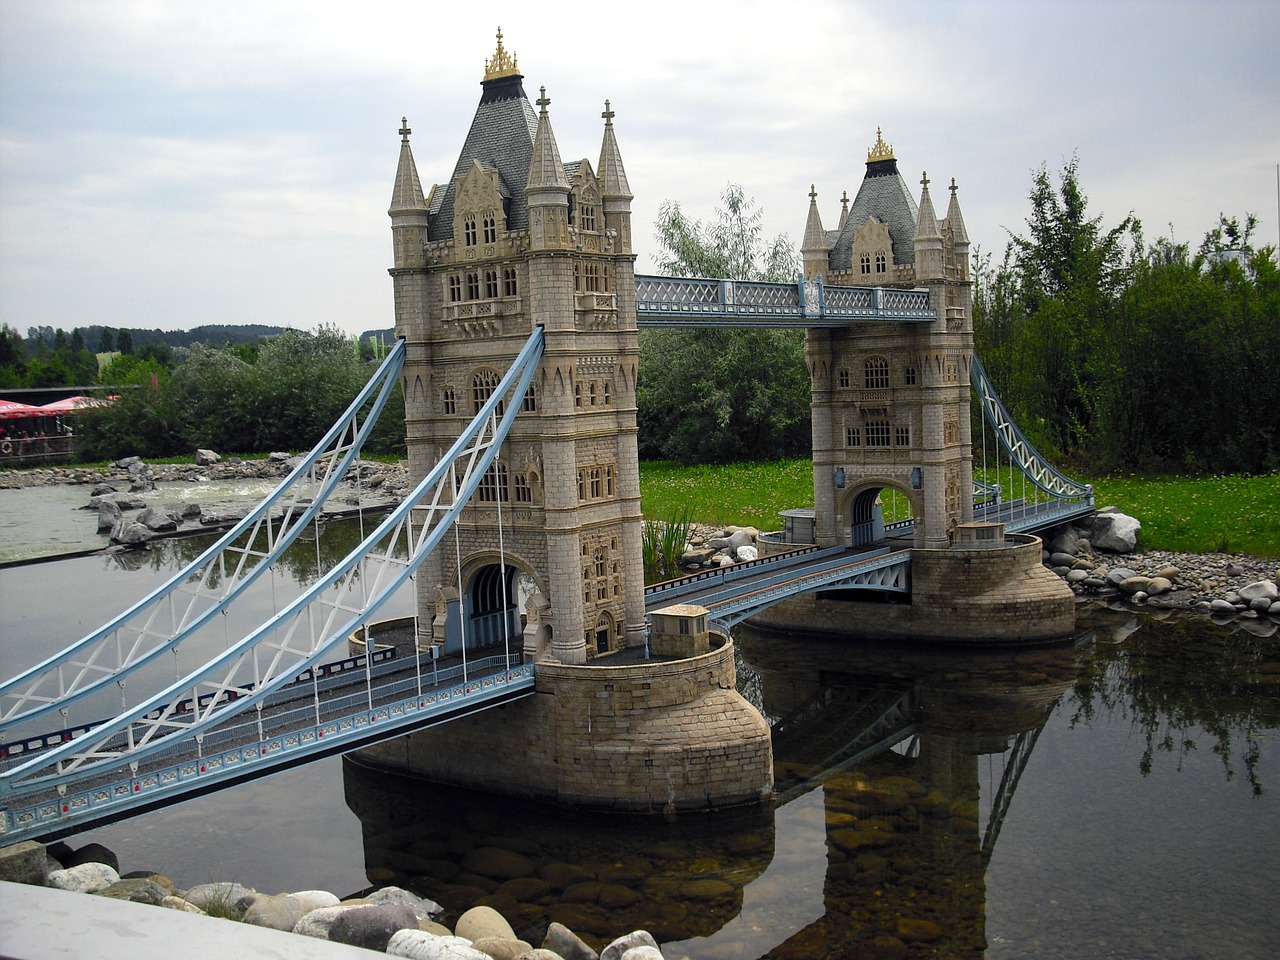 Lankytinos Vietos, Bokšto Tiltas, Miniatiūros, Miniatiūrinis Parkas, Kopija, Londonas, Struktūros, Tiltai, Turistų Atrakcijos, Turizmas